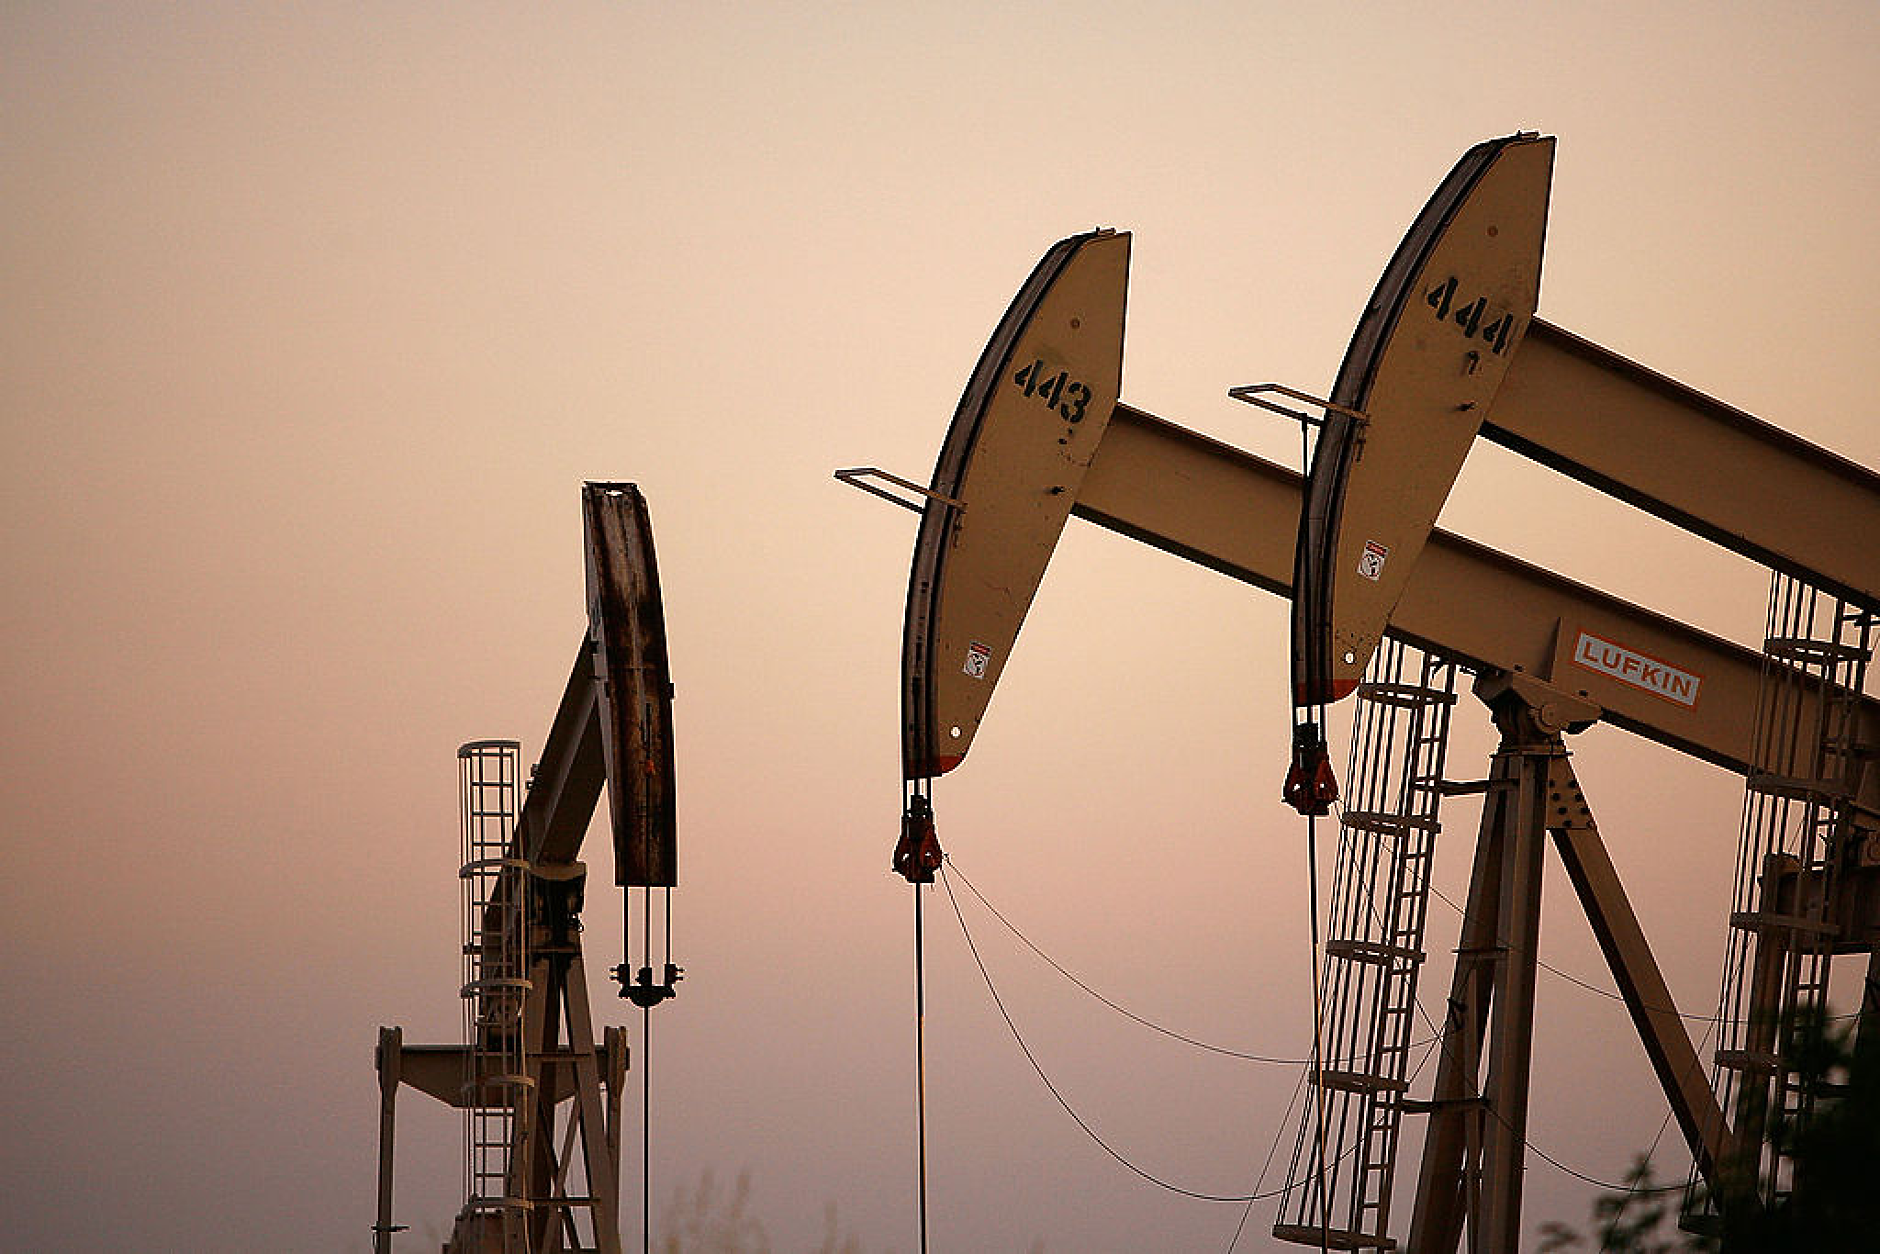 Петролът се е насочил към най-големия си седмичен спад от март насам